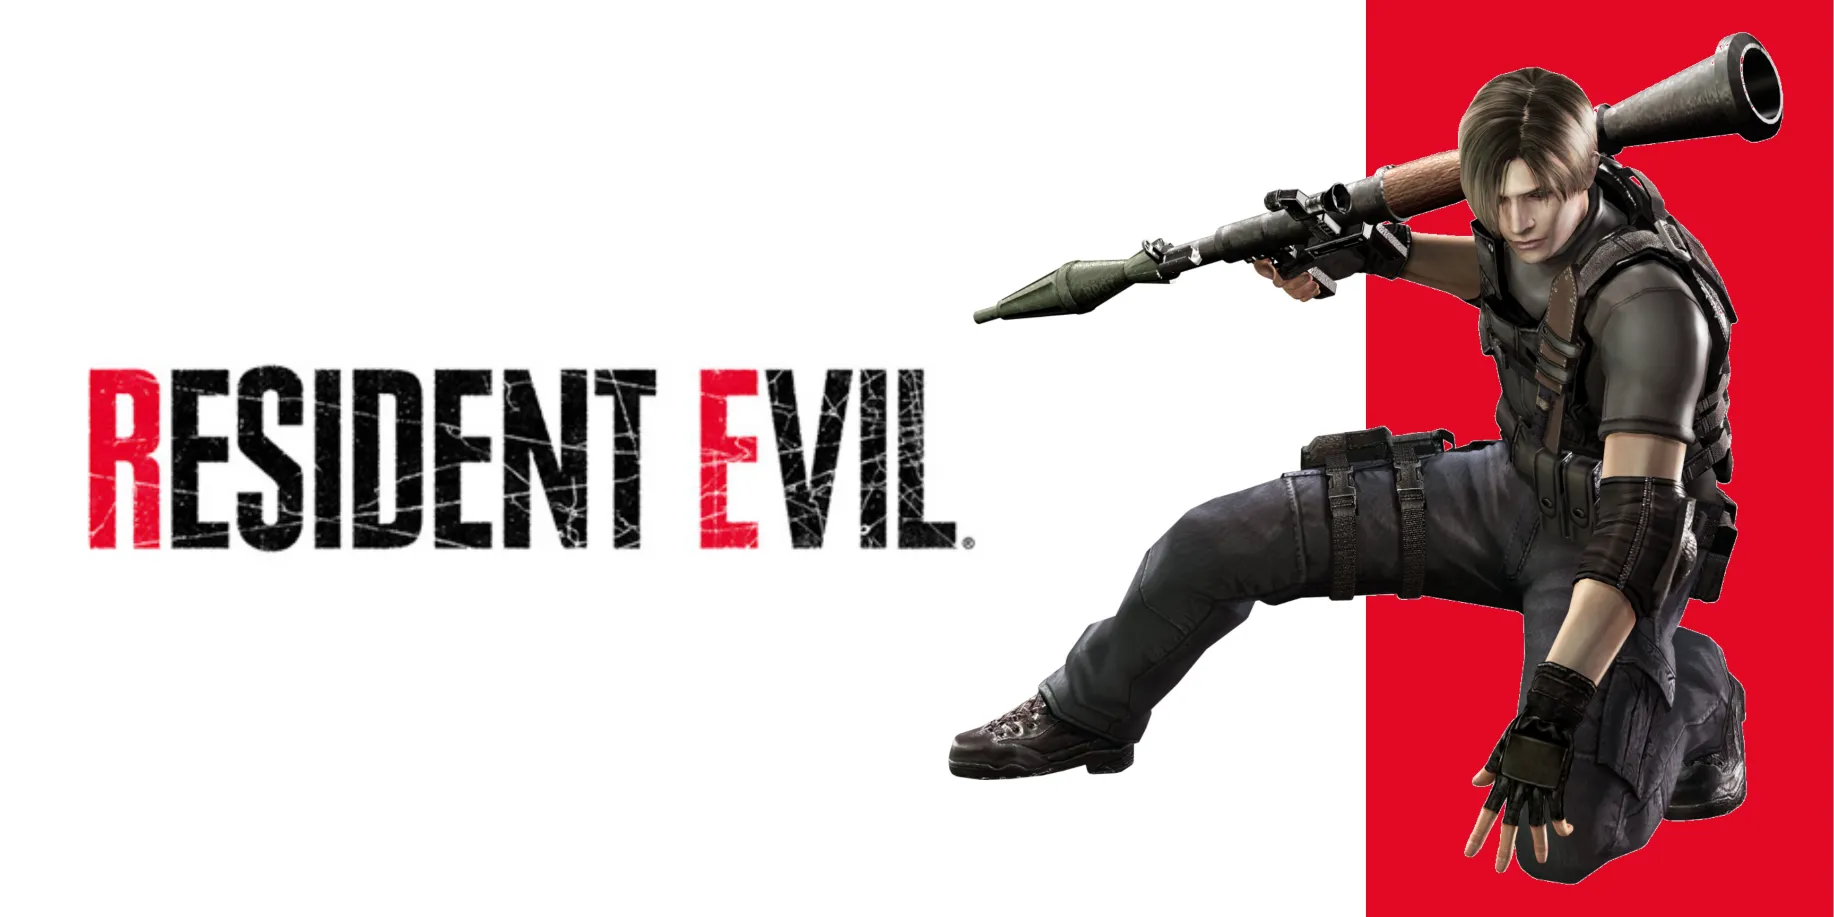 Resident Evil 4 Guide - Unlock alternate costumes for Leon, Ashley